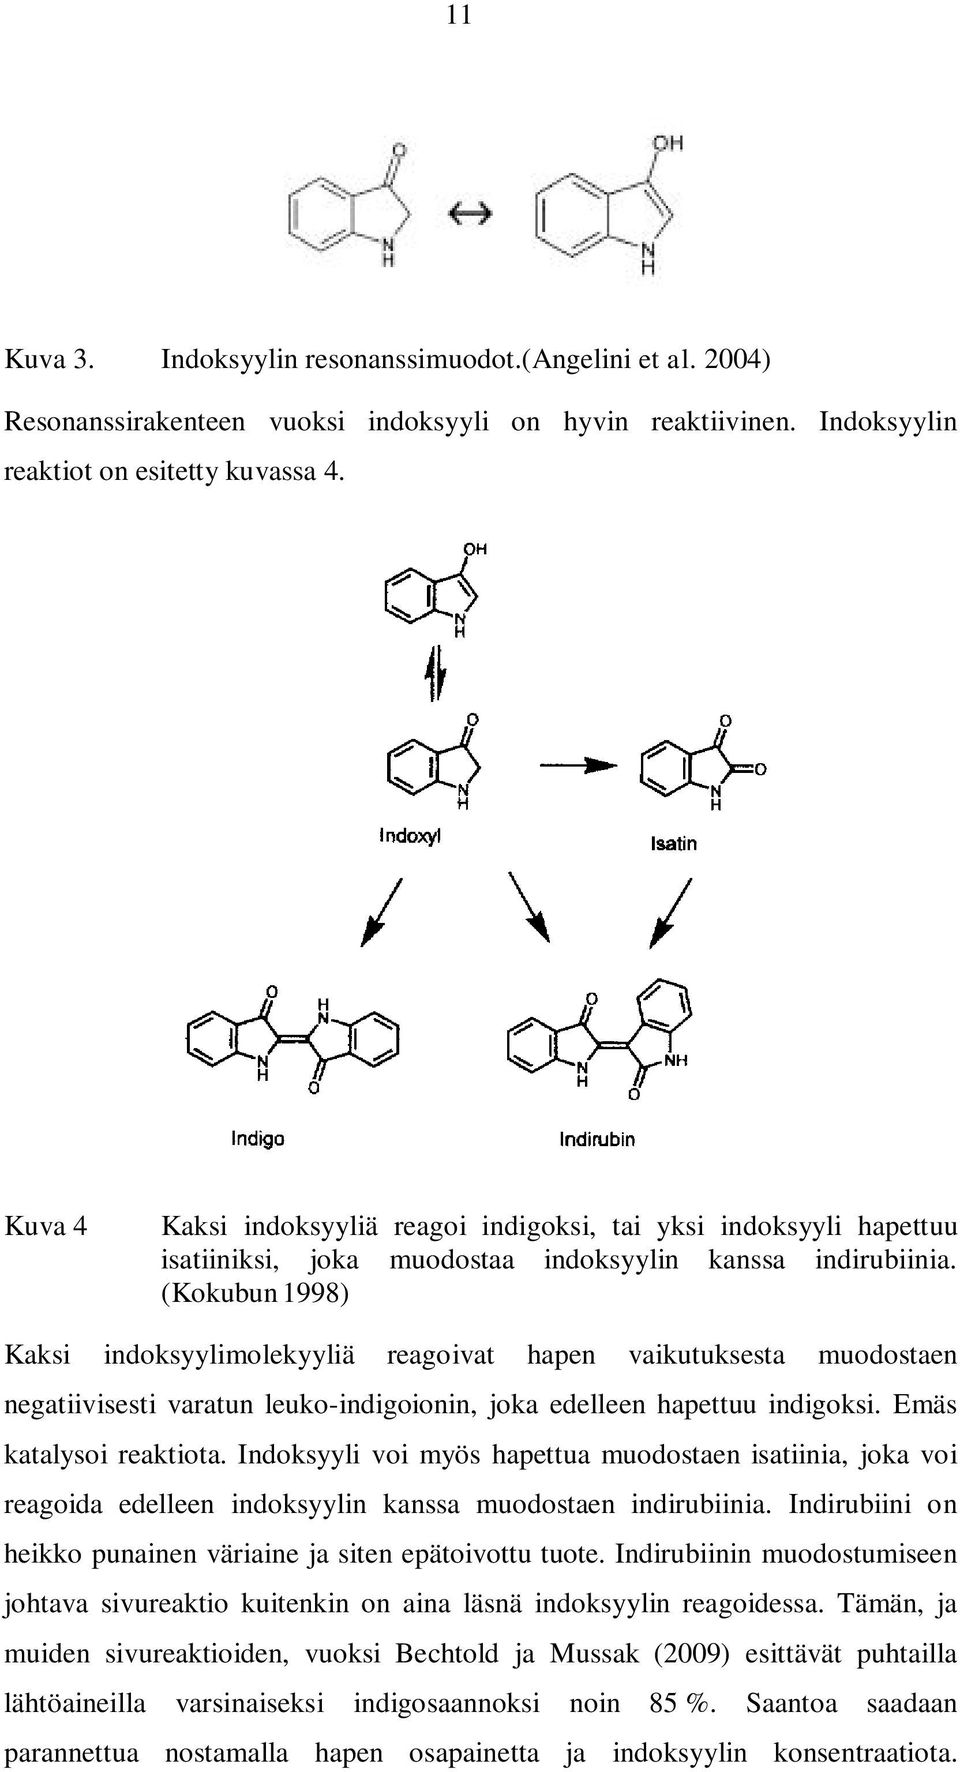 (Kokubun1998) Kaksi indoksyylimolekyyliä reagoivat hapen vaikutuksesta muodostaen negatiivisesti varatun leuko-indigoionin, joka edelleen hapettuu indigoksi. Emäs katalysoi reaktiota.